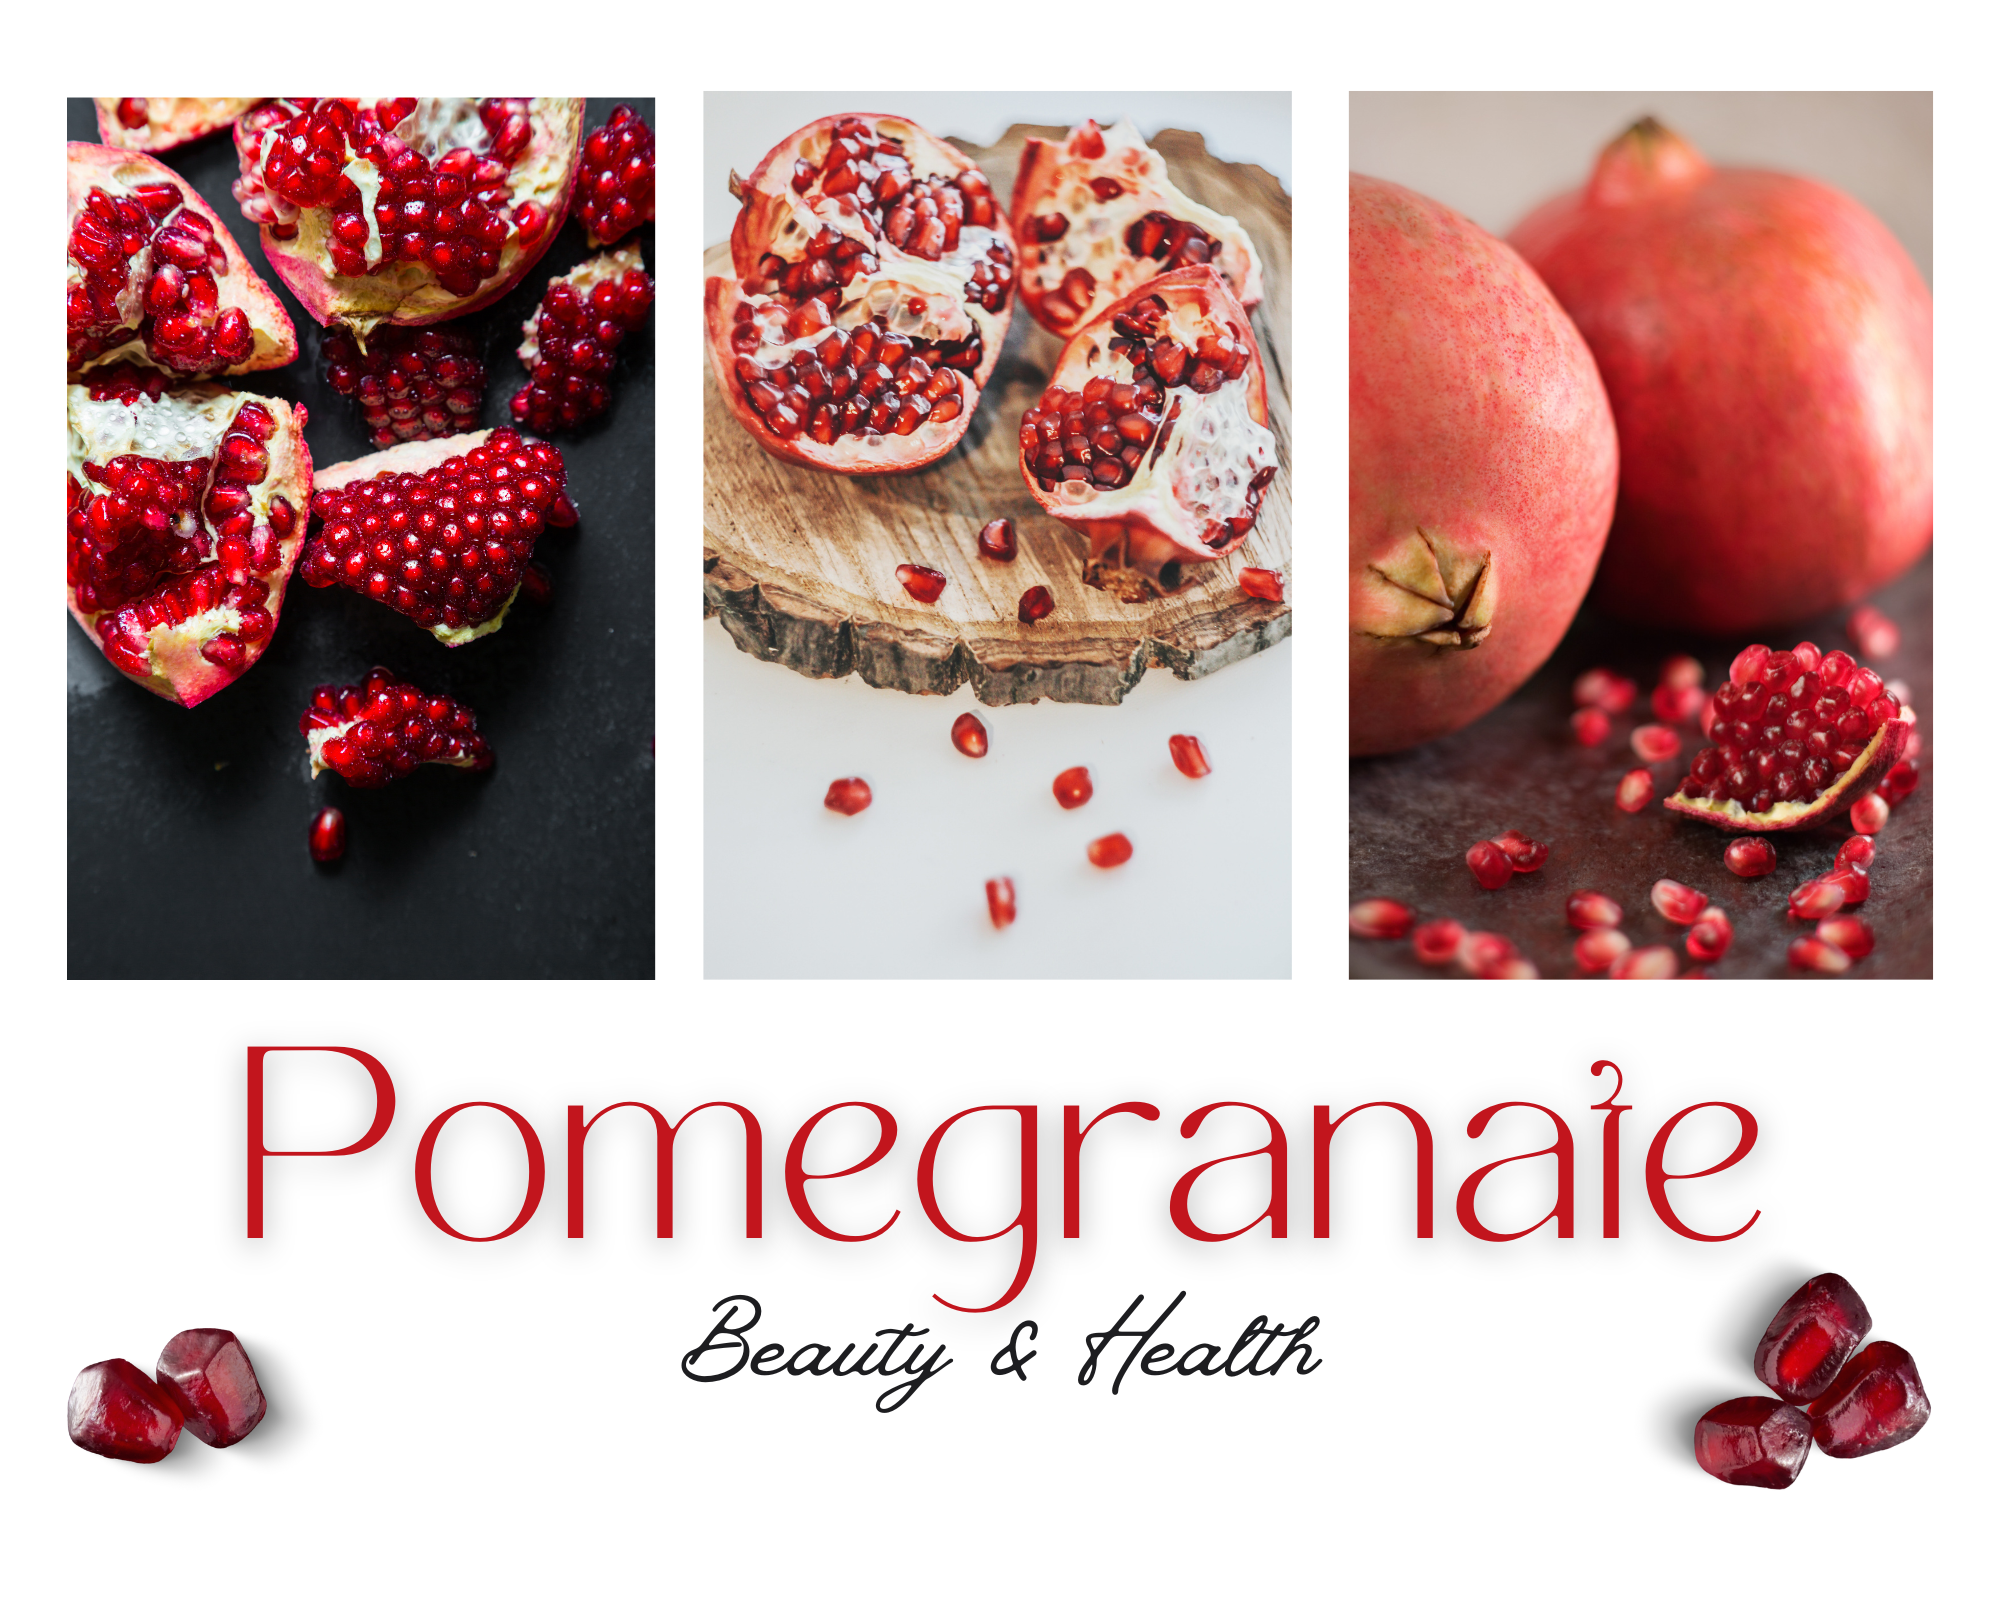 Pomegranate Beauty & Health